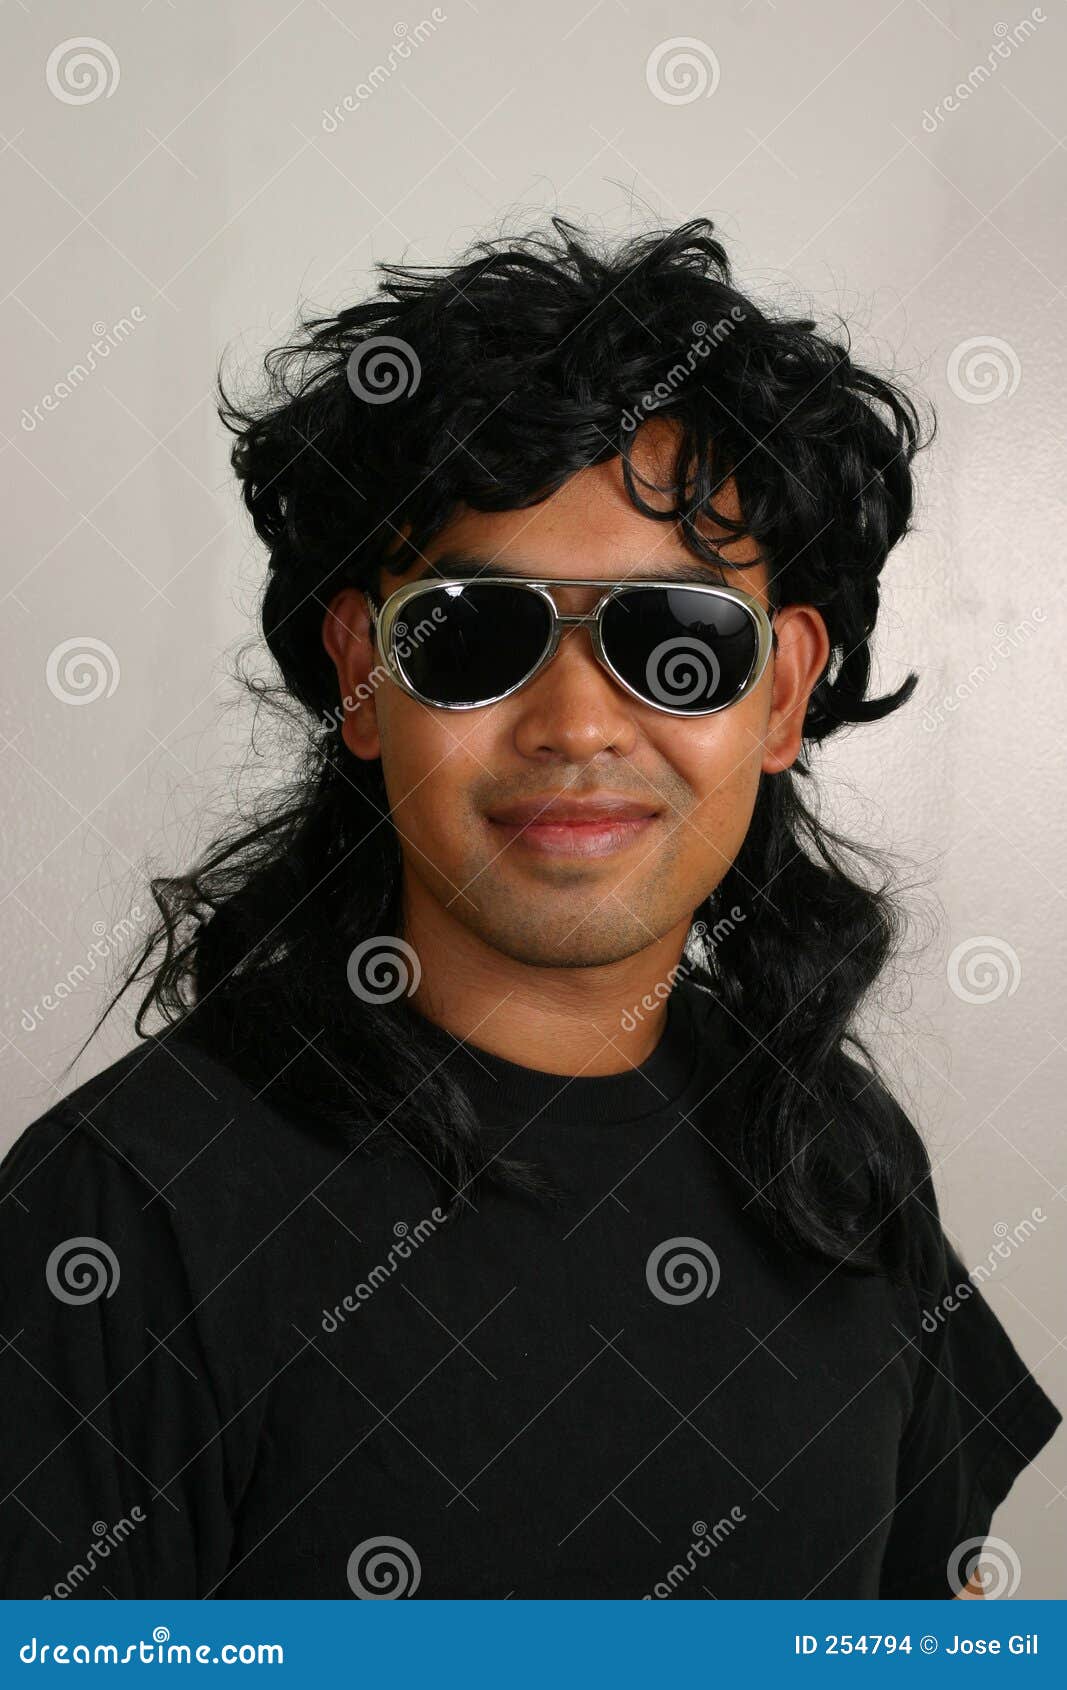  Homme  de mulet  photo stock Image du acteur sunglasses 